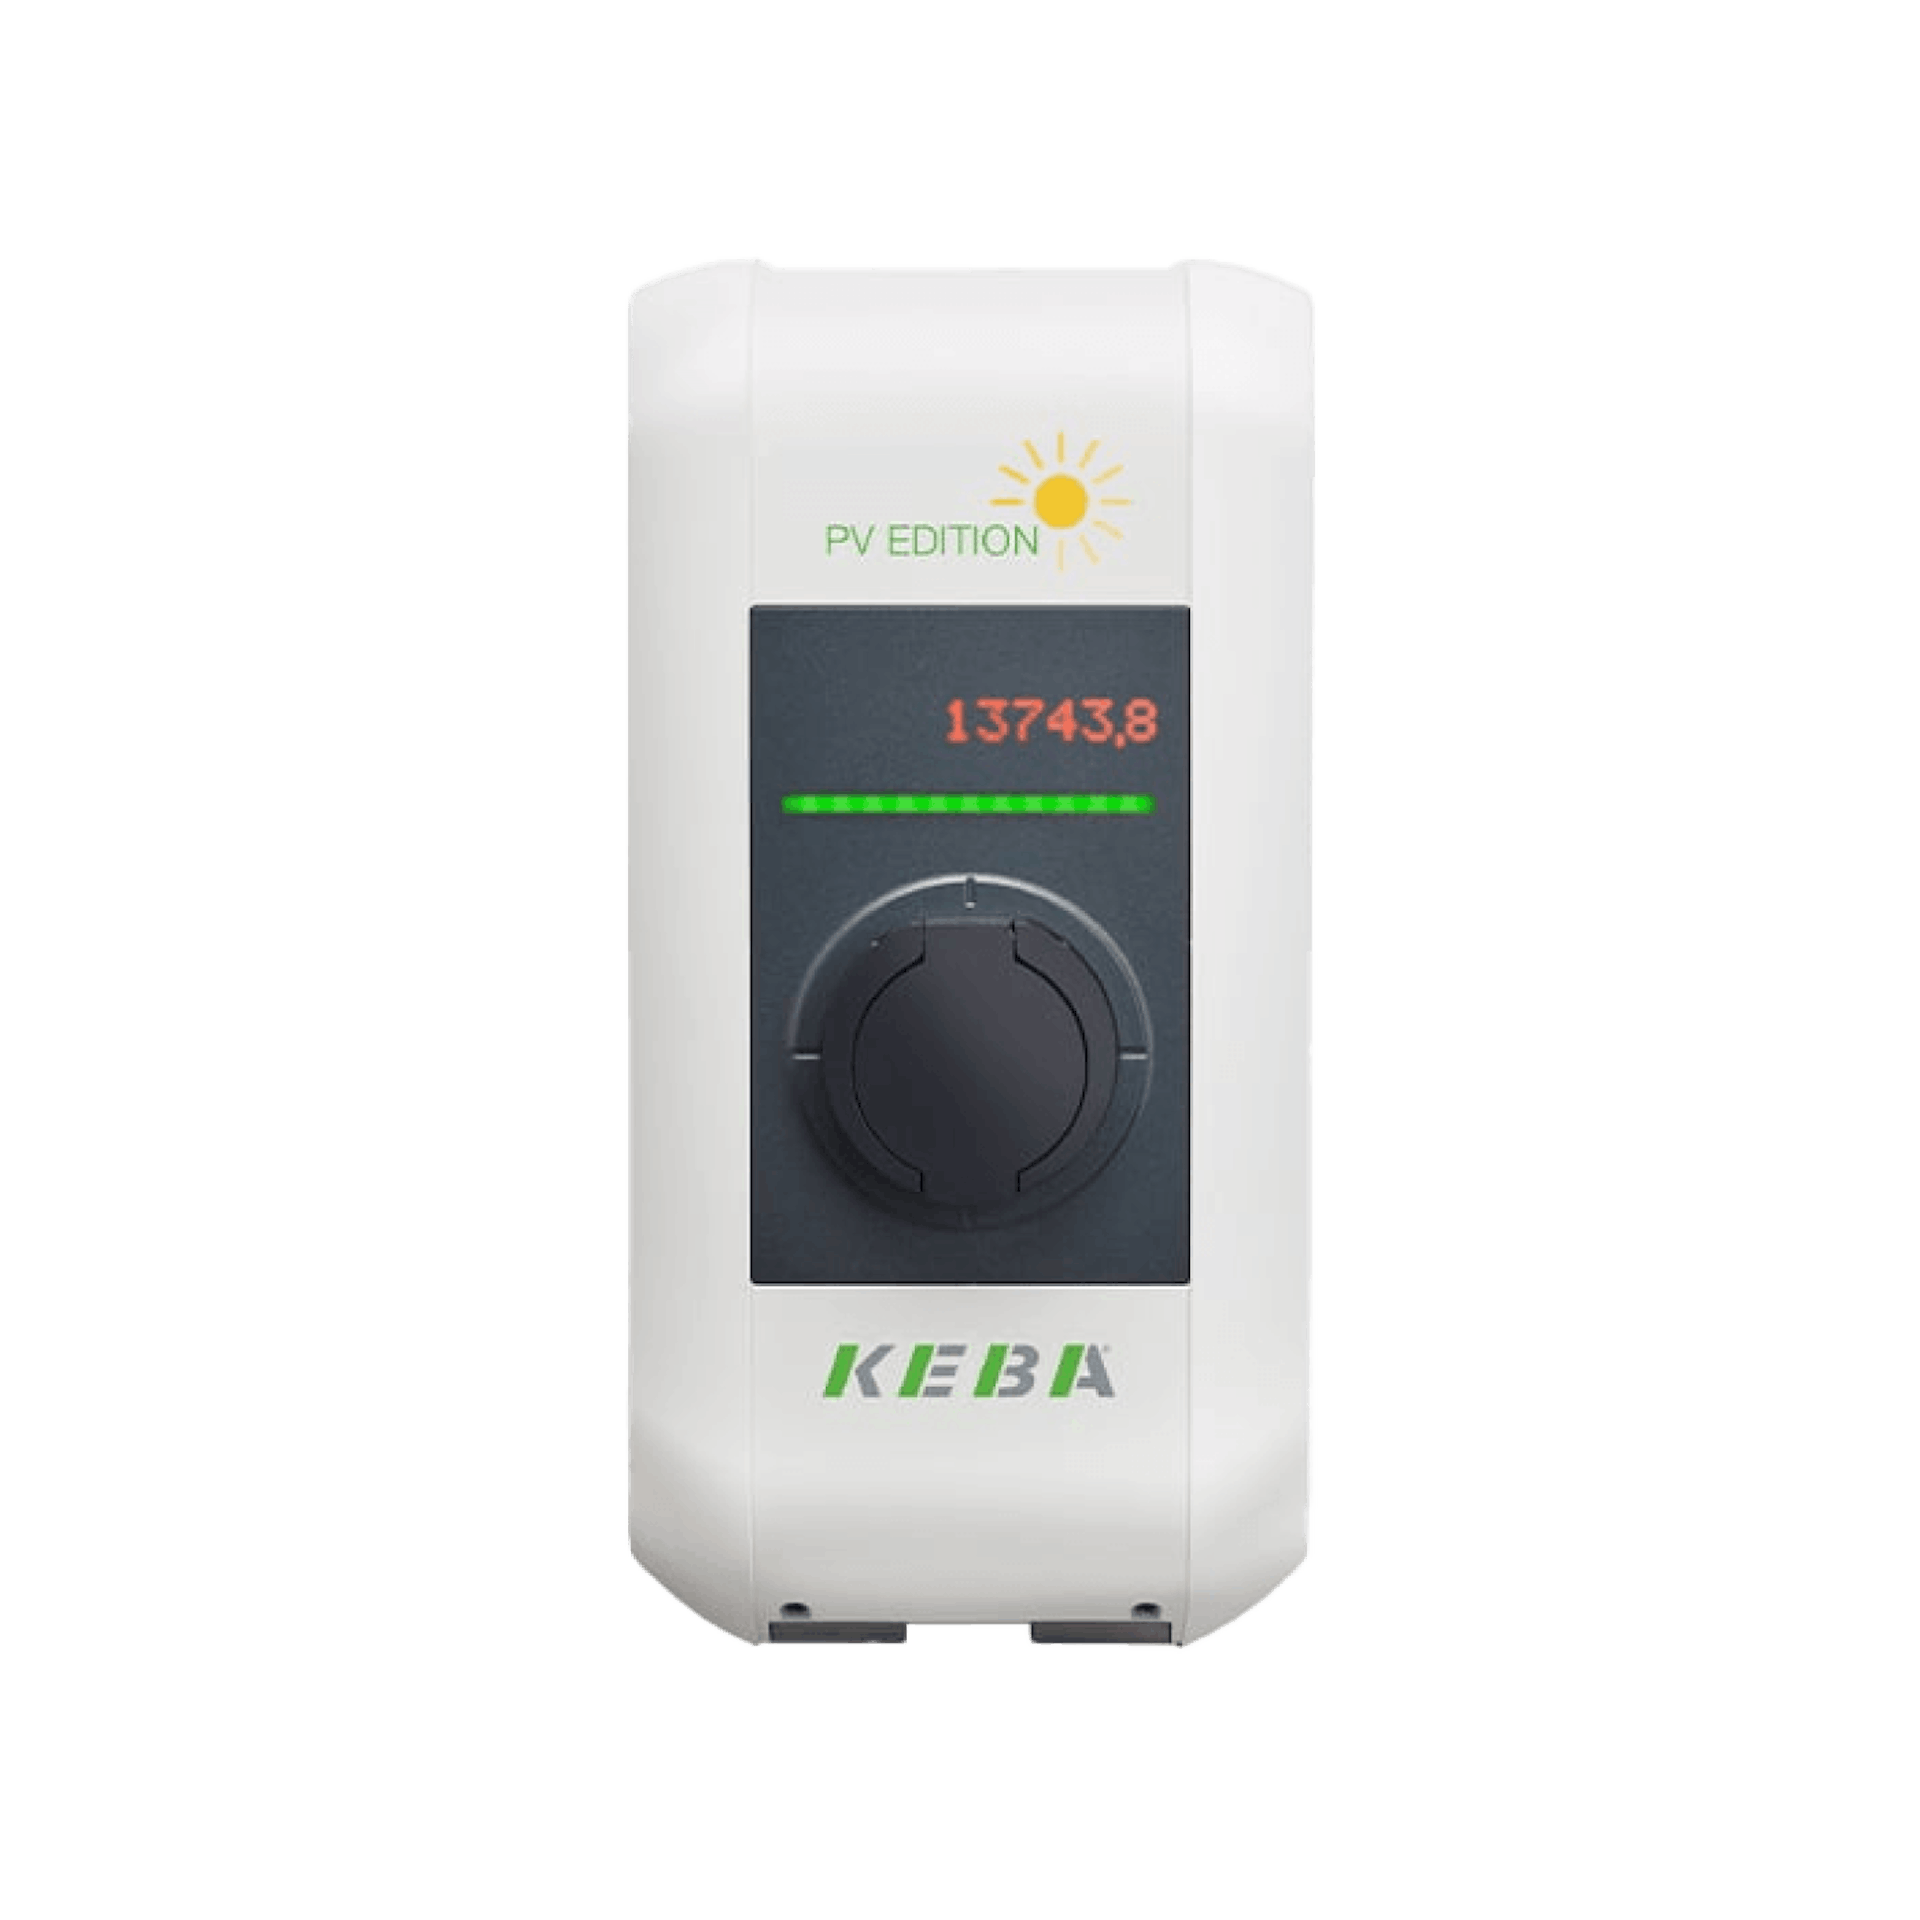 KEBA KeContact P30 PV EDITION (22 kW) – Charging Box